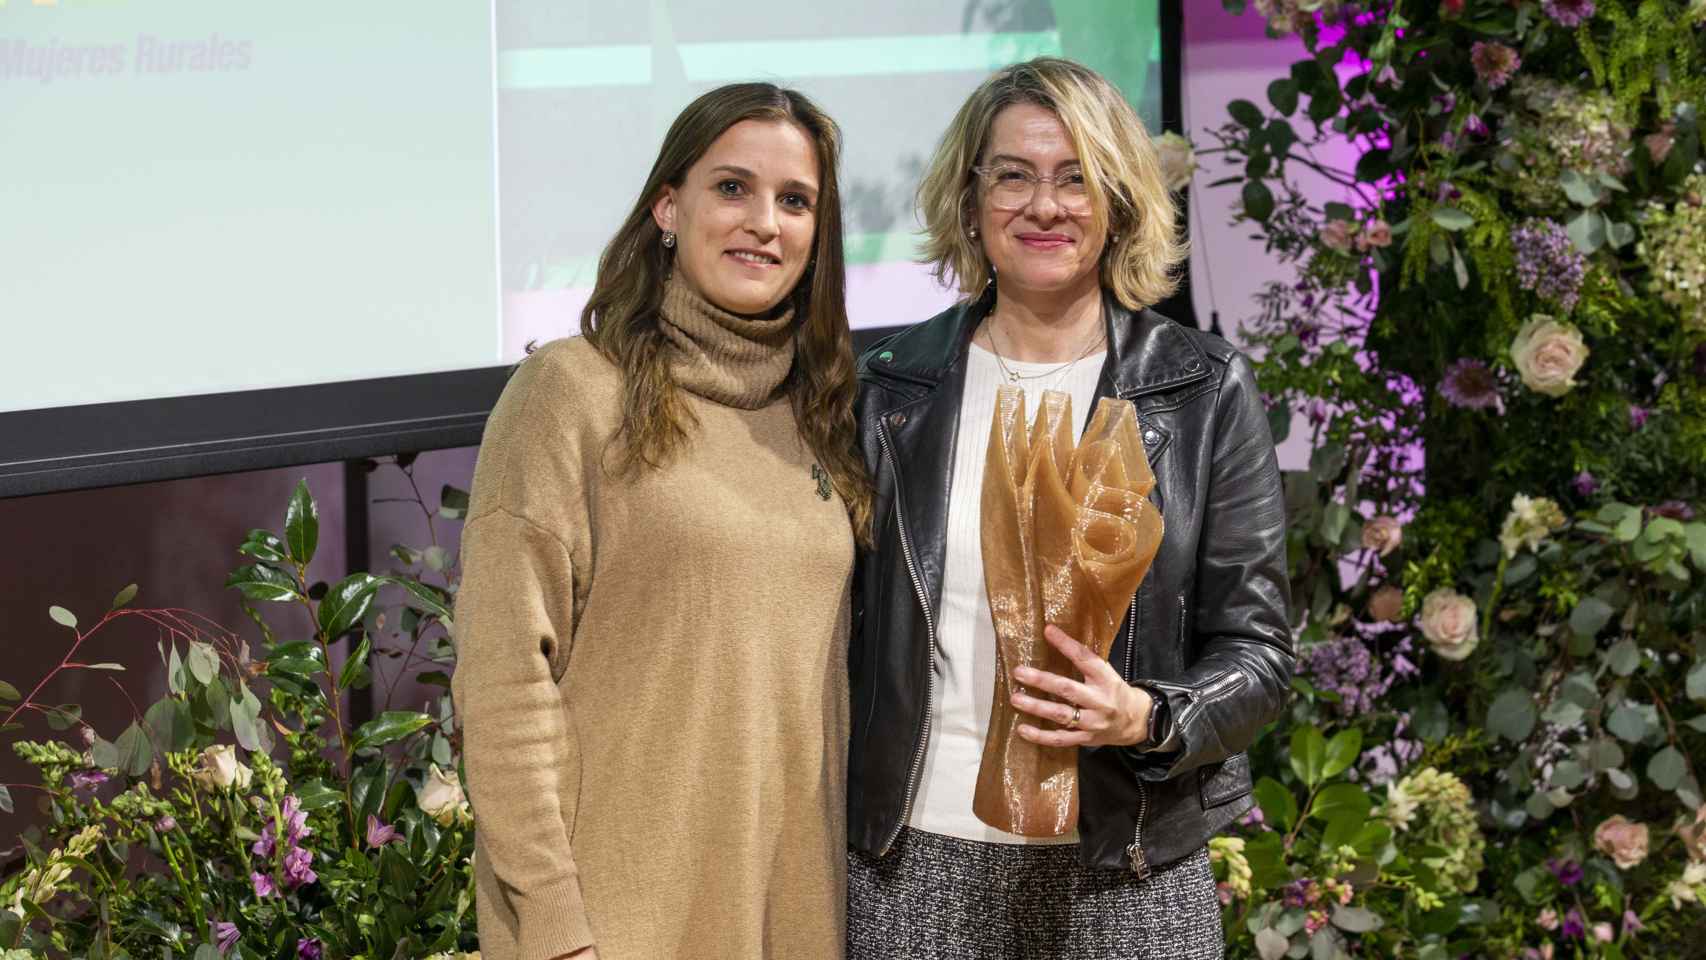 Entrega del premio inspirACCIÓN en la categoría de Territorio a la Federación de Asociaciones de Mujeres Rurales (Fademur)